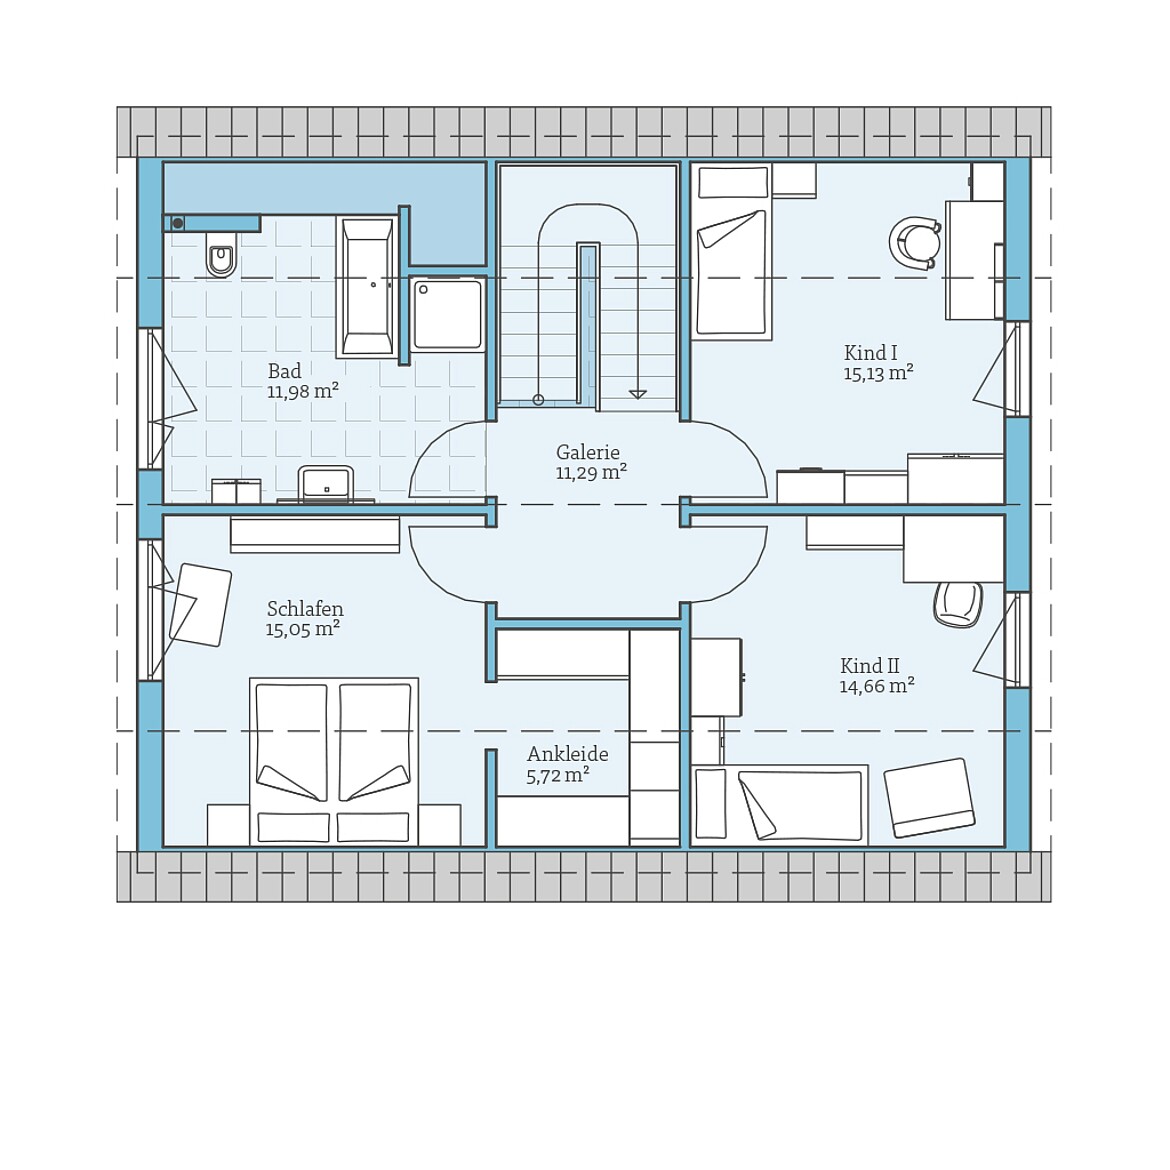 Prefabricated house Variant 35-152: Top floor plan